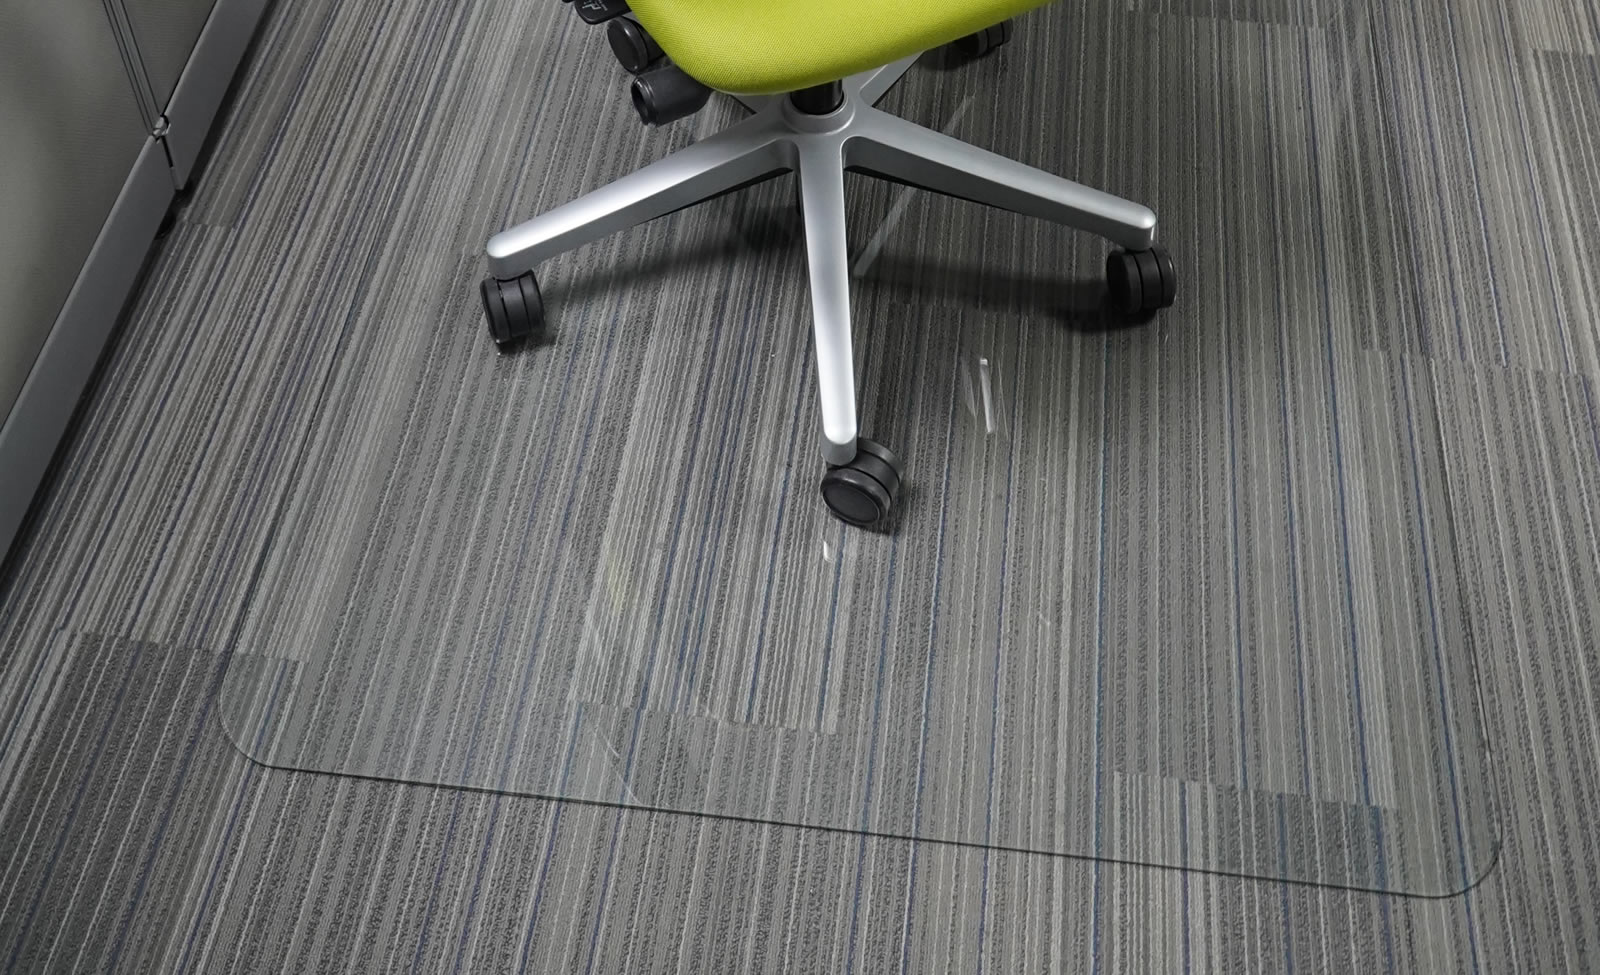 glass chair mat under green rolling office chair